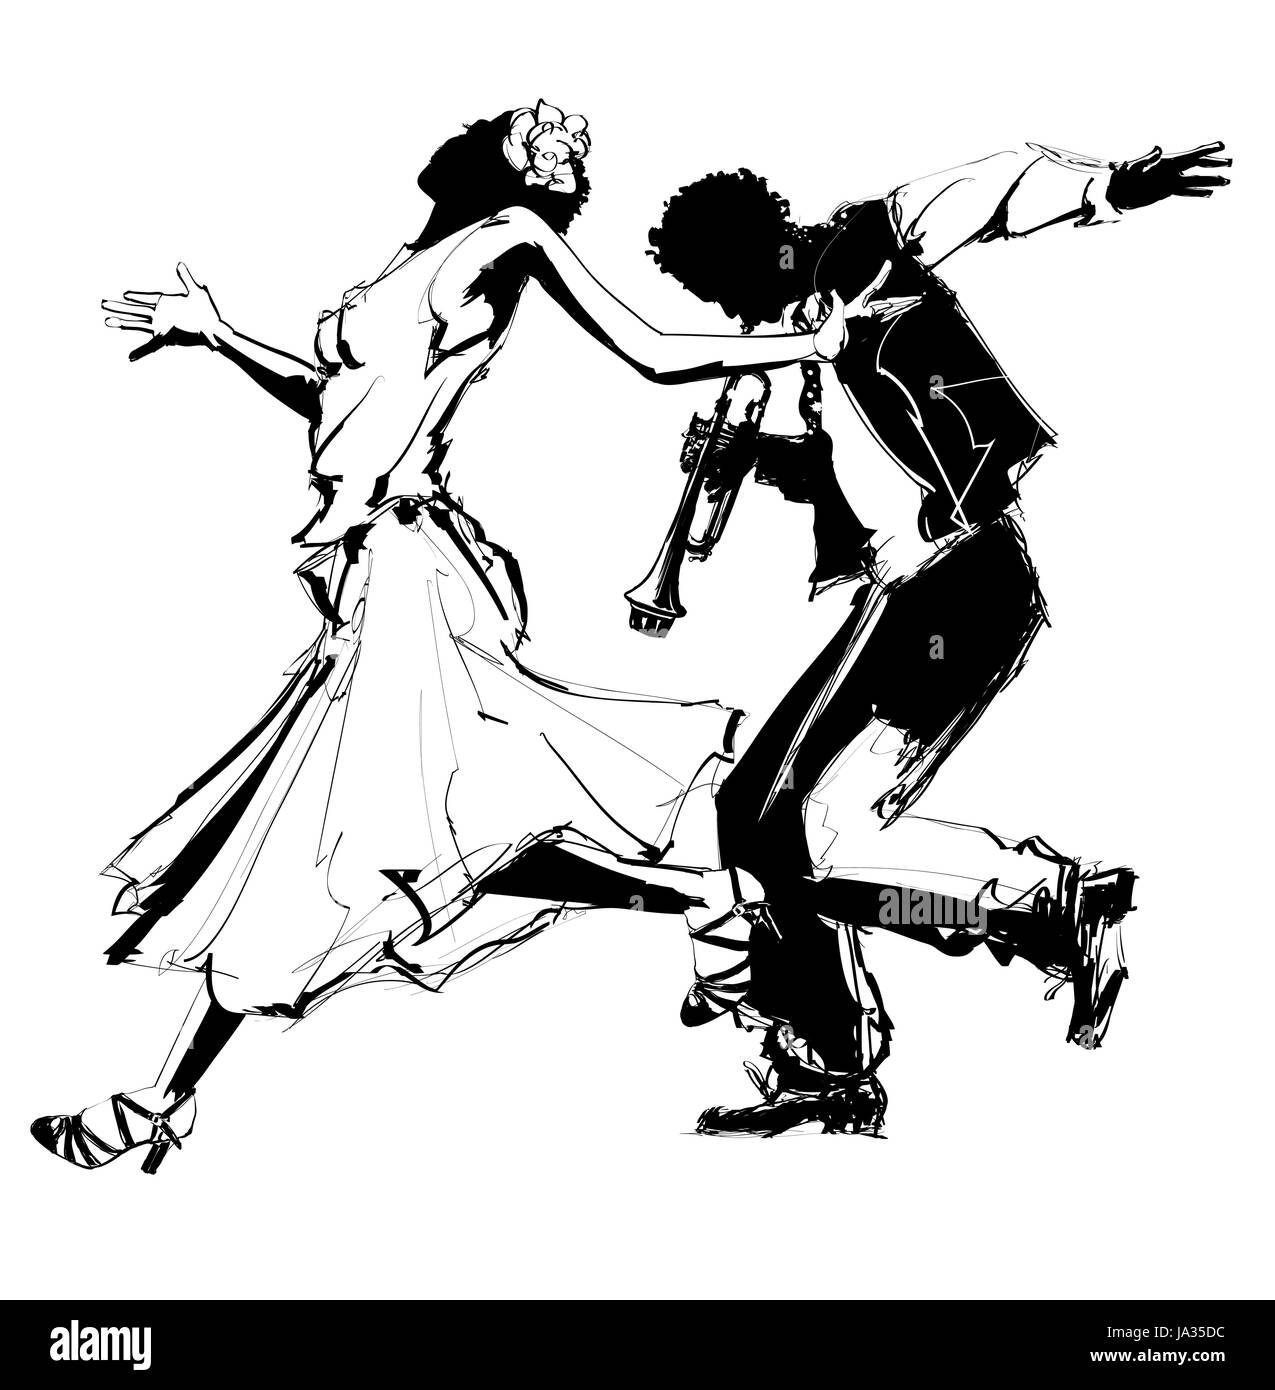 Frau tanzt mit einem Trompeter - Vektor-illustration Stock Vektor